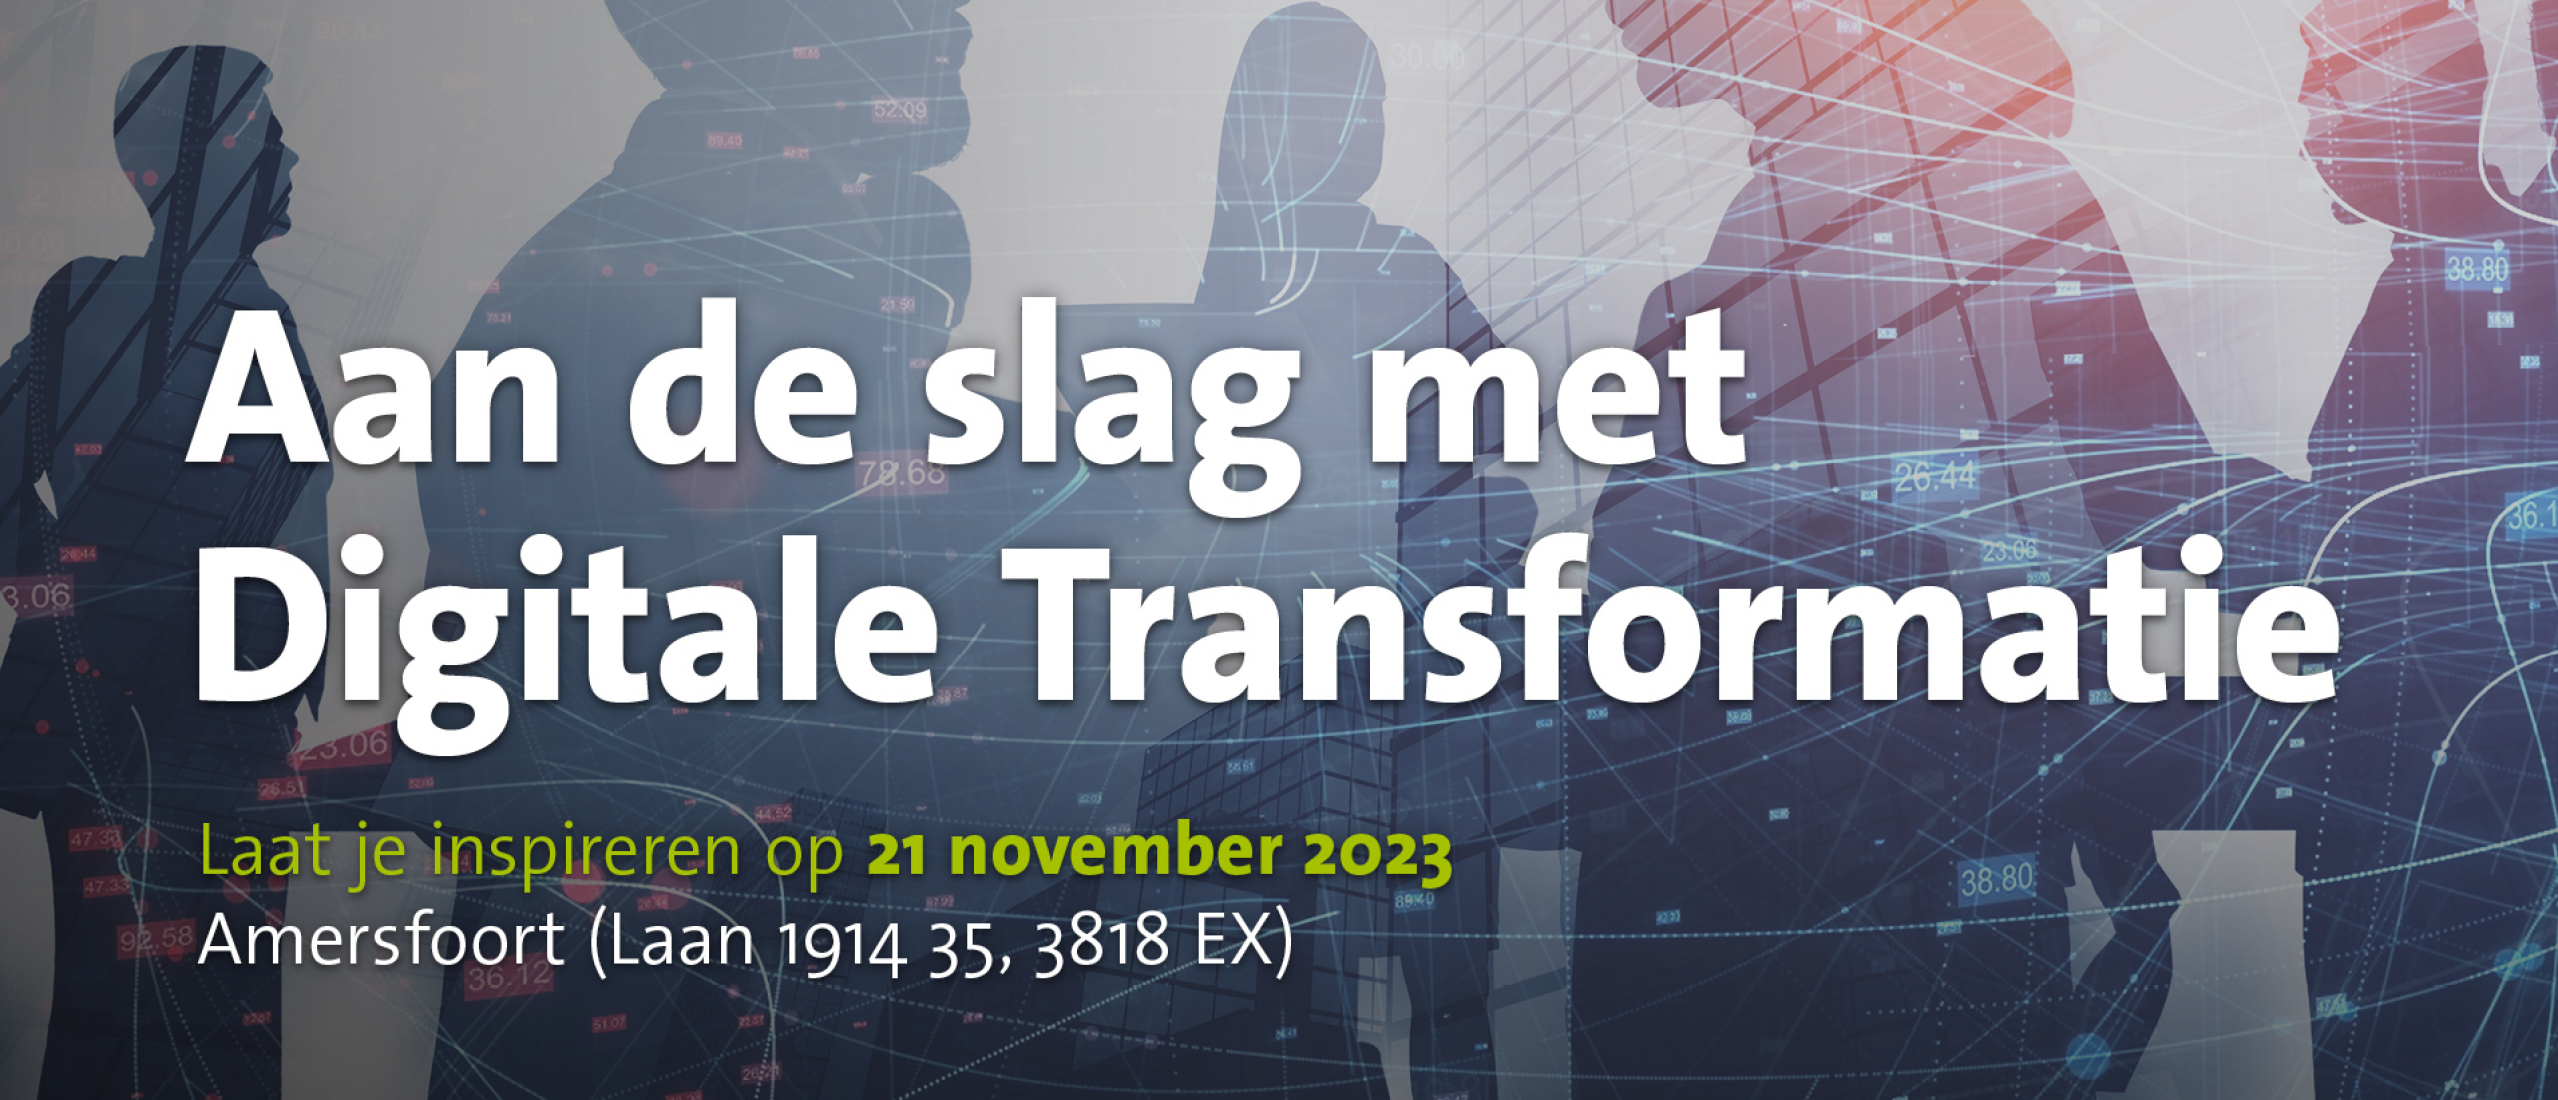 Event: Aan de slag met Digitale Transformatie op 21 november